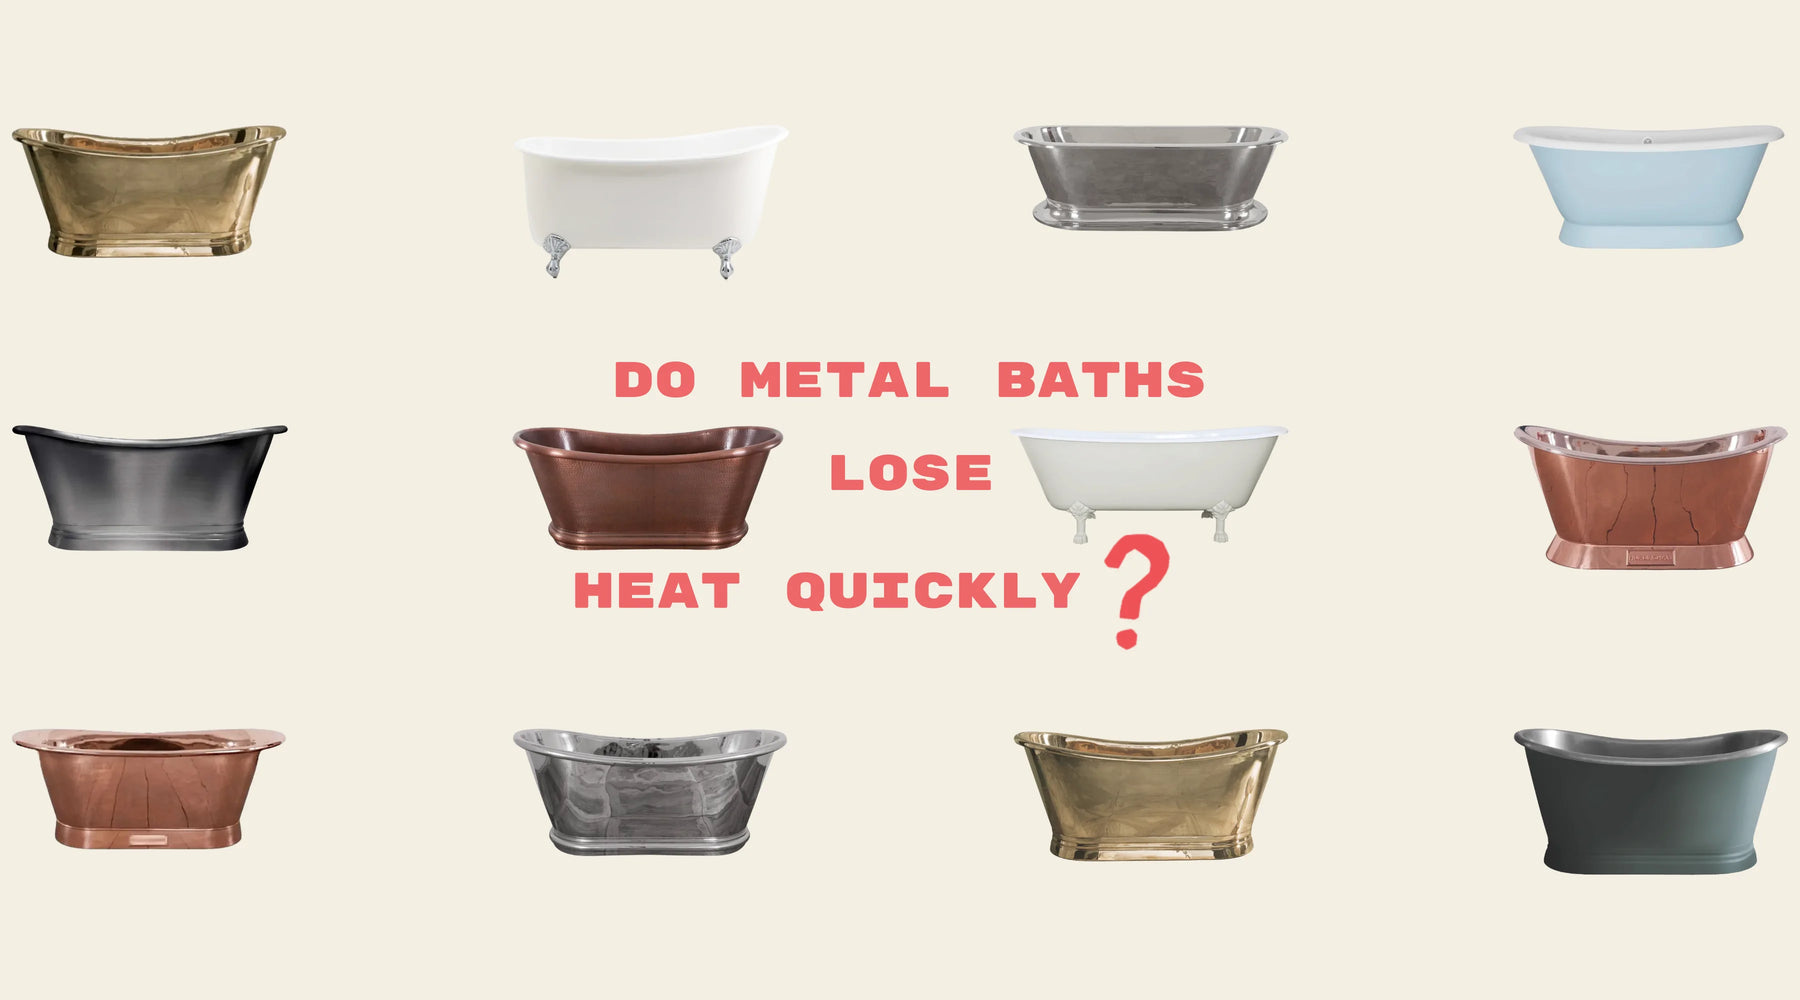 Do Metal Baths Lose Heat Quickly?